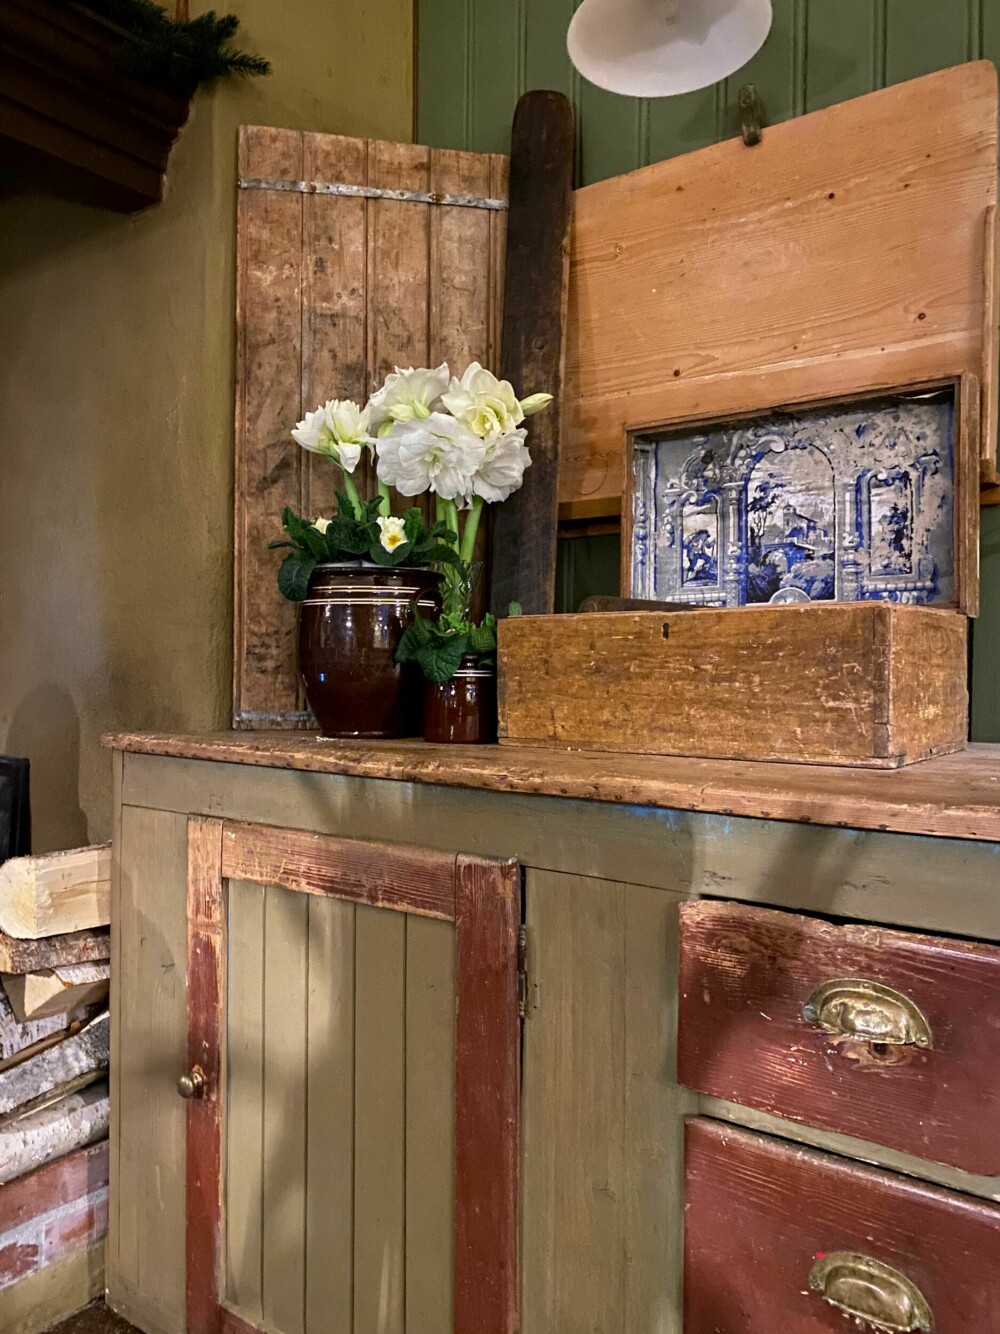 KJØKKENBENK: Gamle kjøkkenbenker med all sin patina er ikke nødvendigvis veldig praktisk, men du verden så vakkert! Her er den gammeldagse stilen understreket av den fine bakstefjøla som henger på veggen.